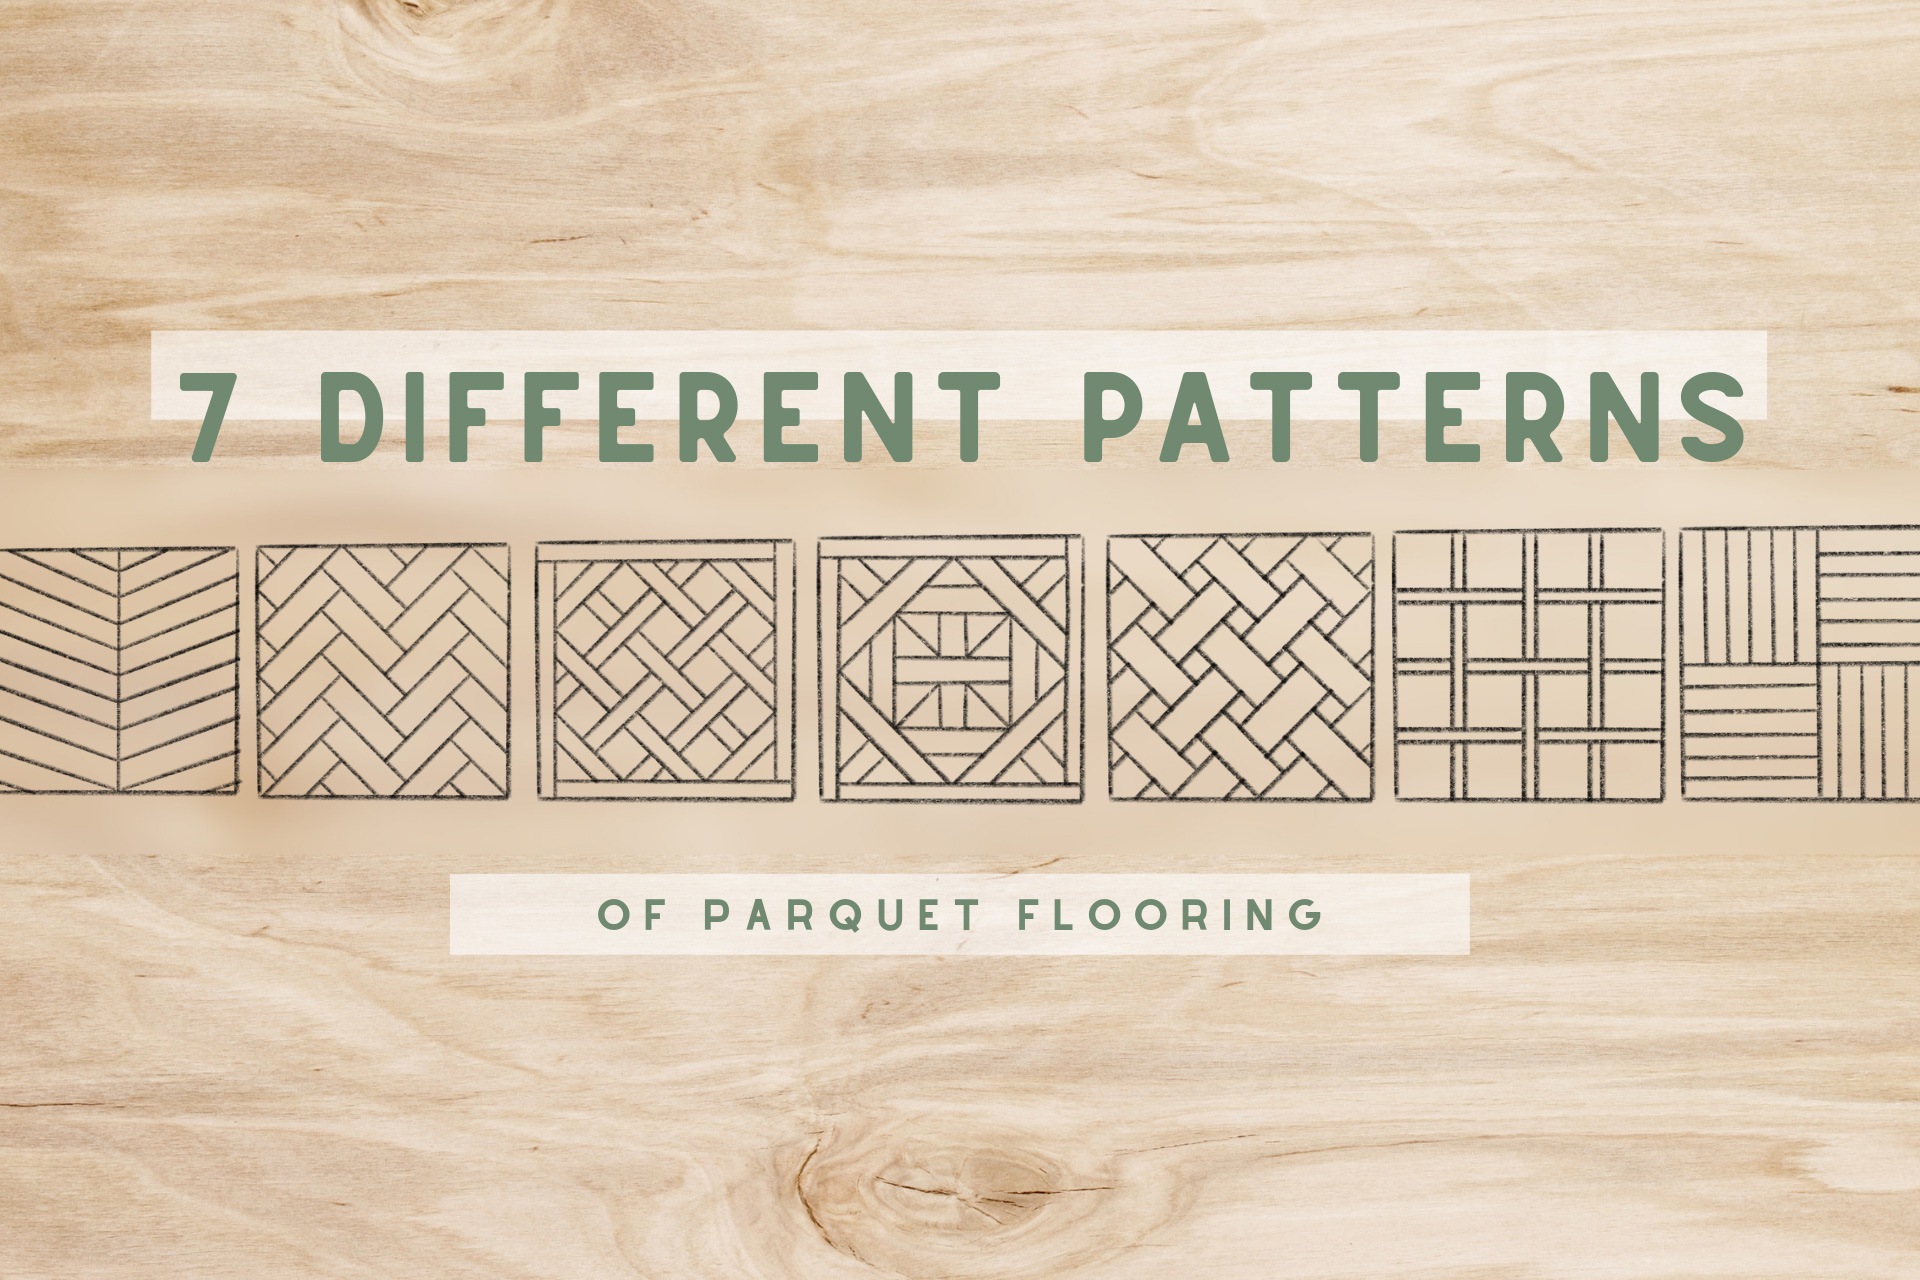 7 different patterns of parquet flooring